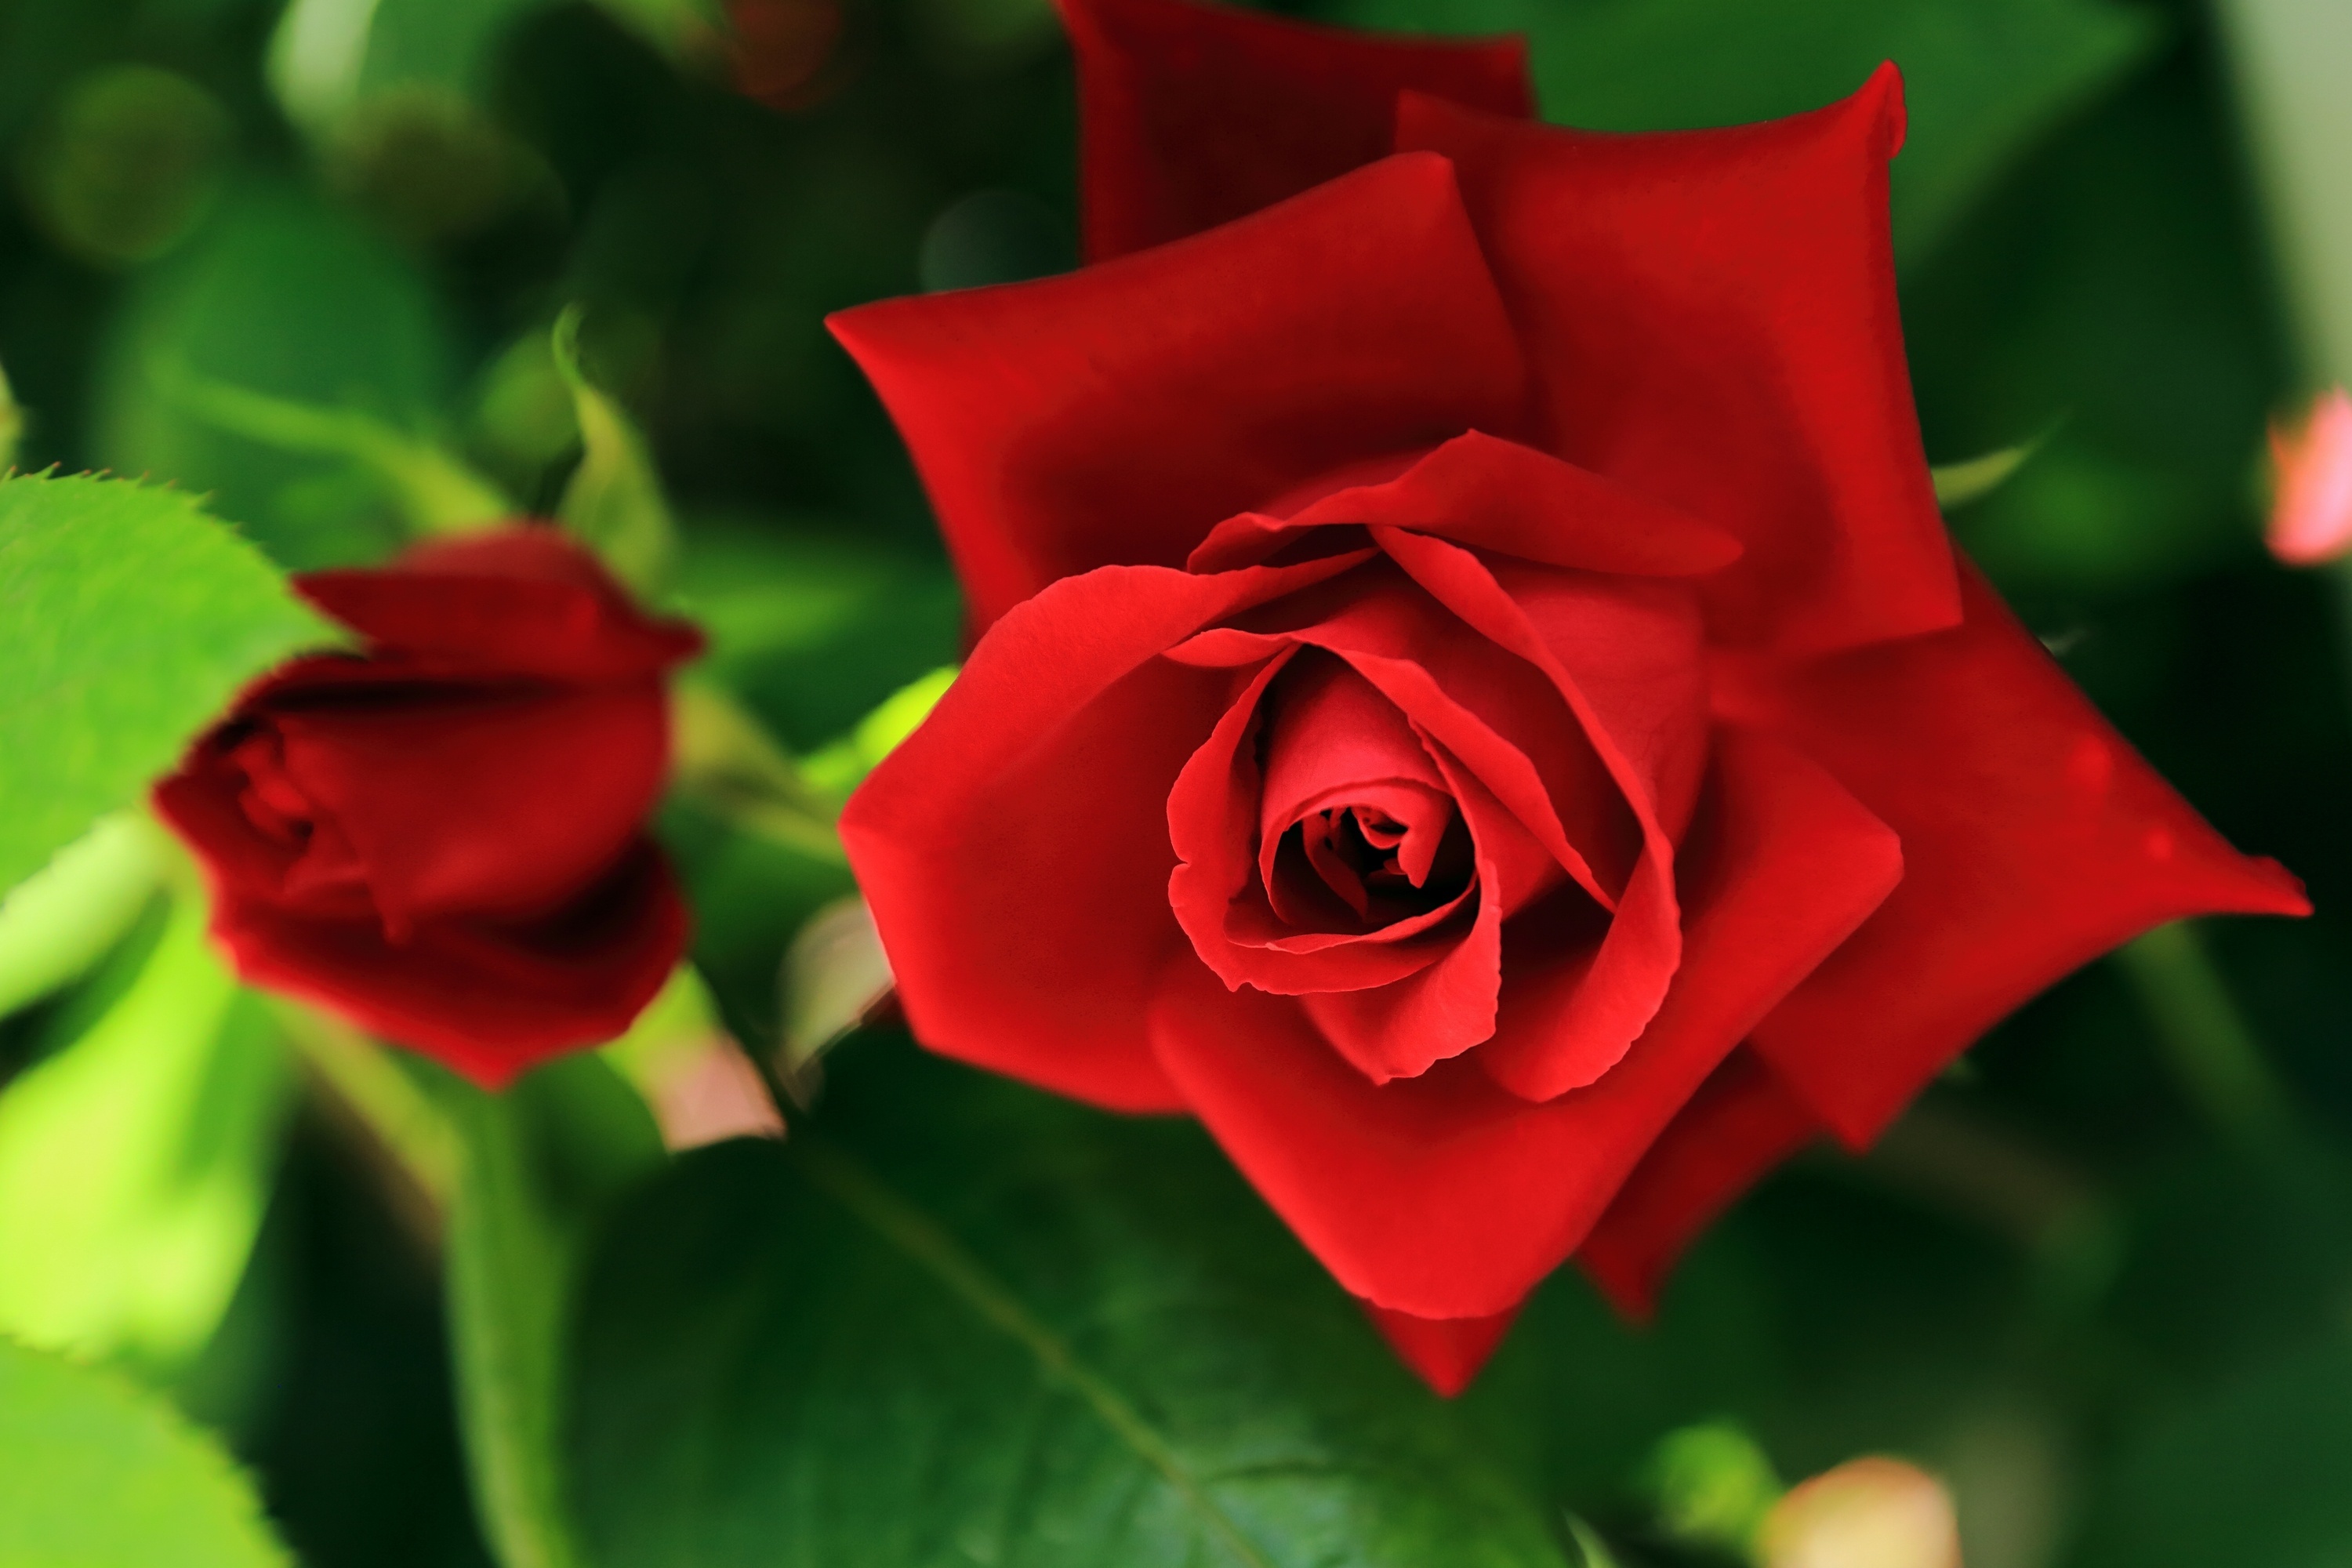 Скачать обои бесплатно Природа, Цветок, Роза, Бутон, Красная Роза, Красный Цветок, Земля/природа, Флауэрсы картинка на рабочий стол ПК